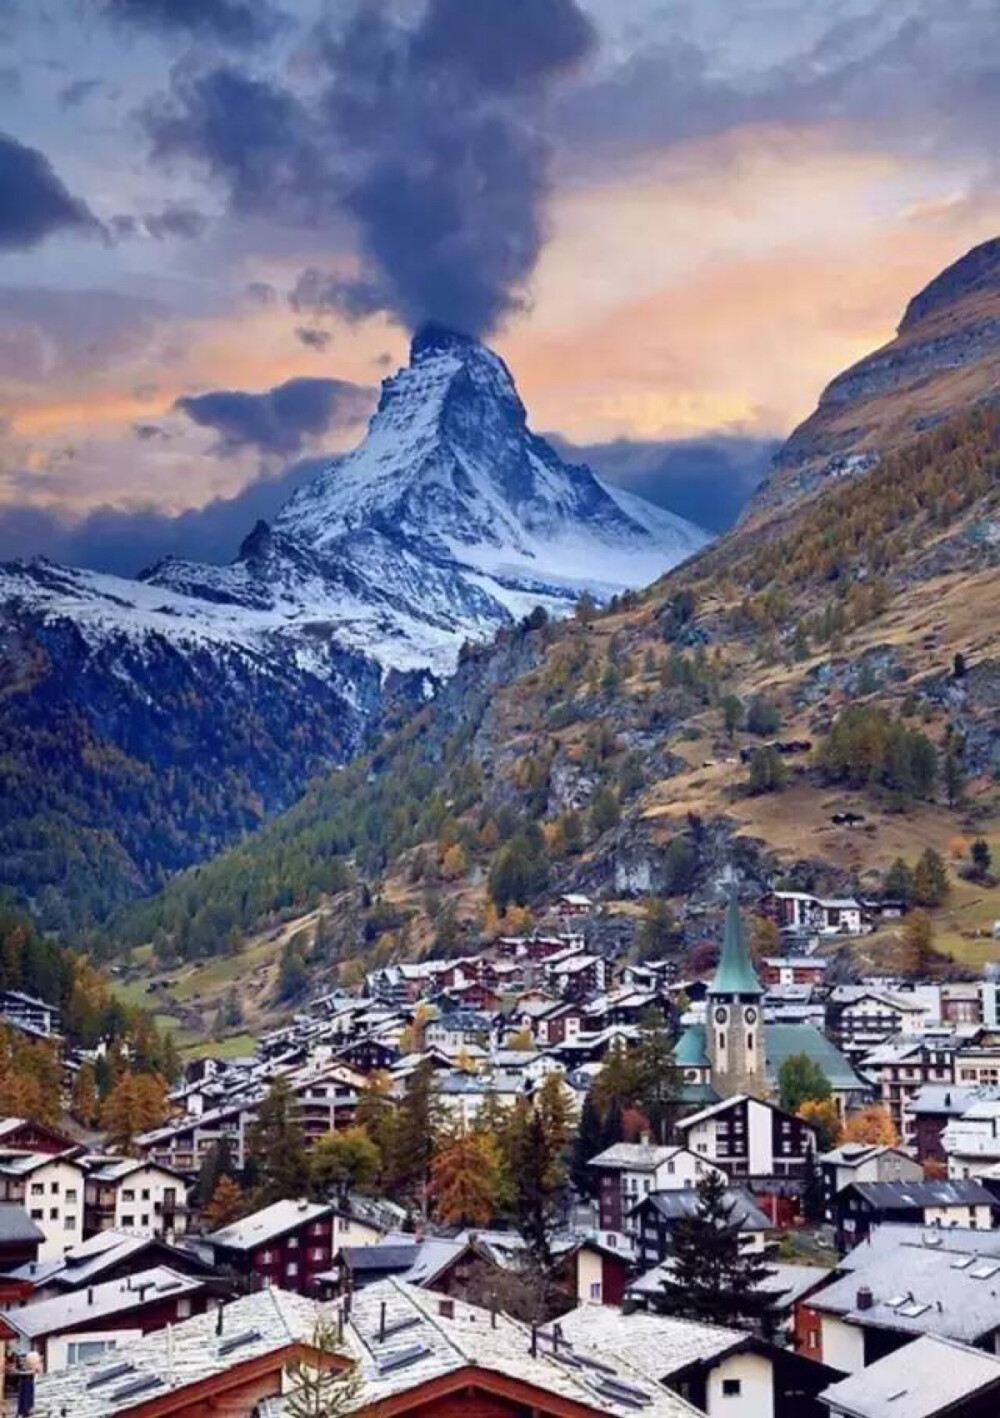 瑞士采尔马特
38座雪山包围的冰川小镇
世界顶级滑雪胜地
拥有阿尔卑斯山群中最美的一座山